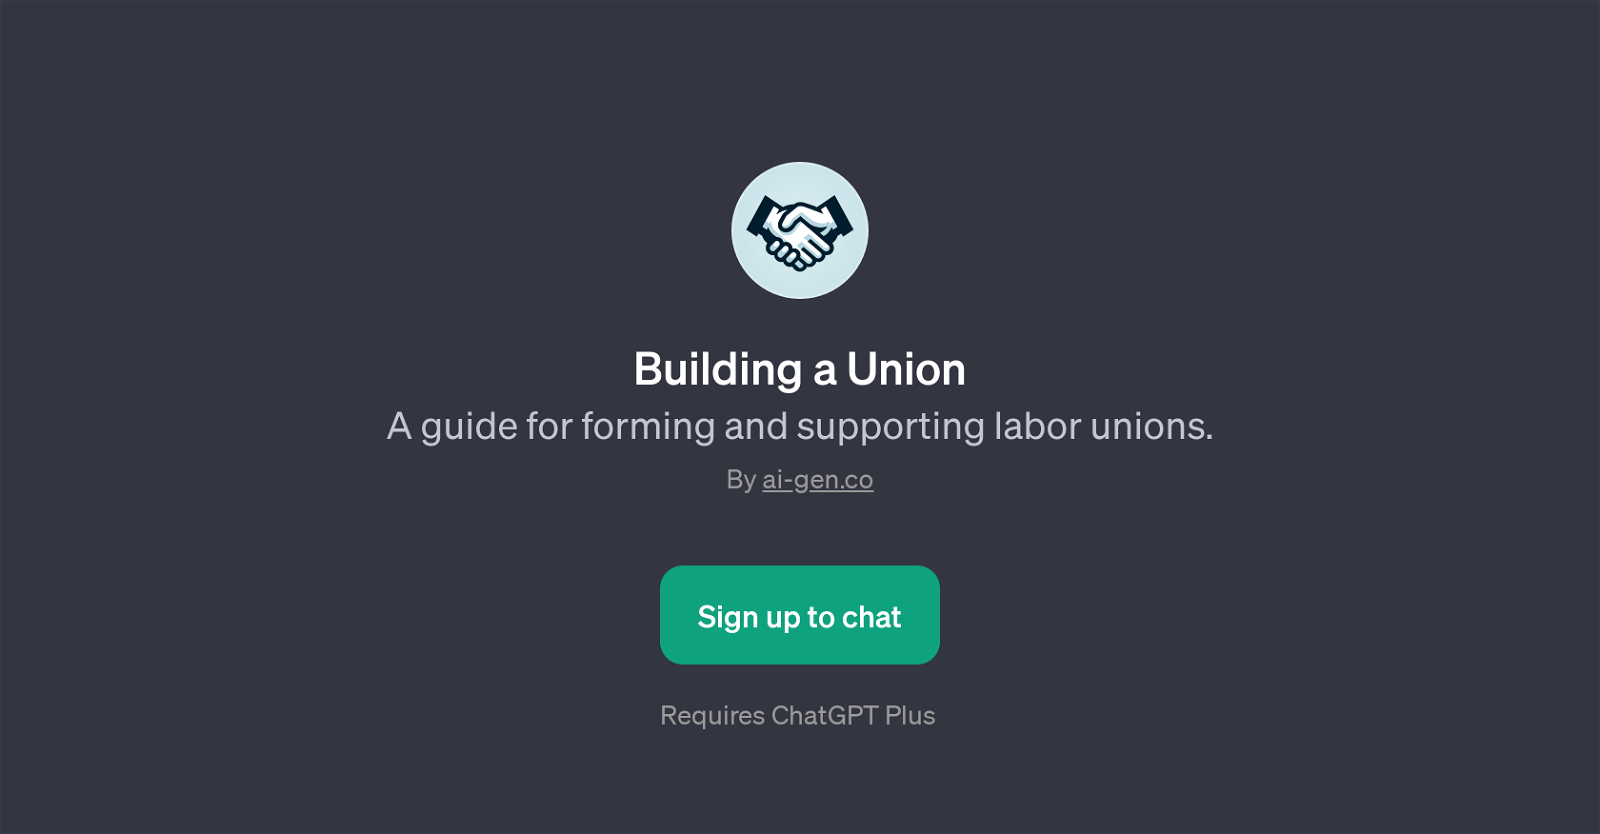 Building a Union website